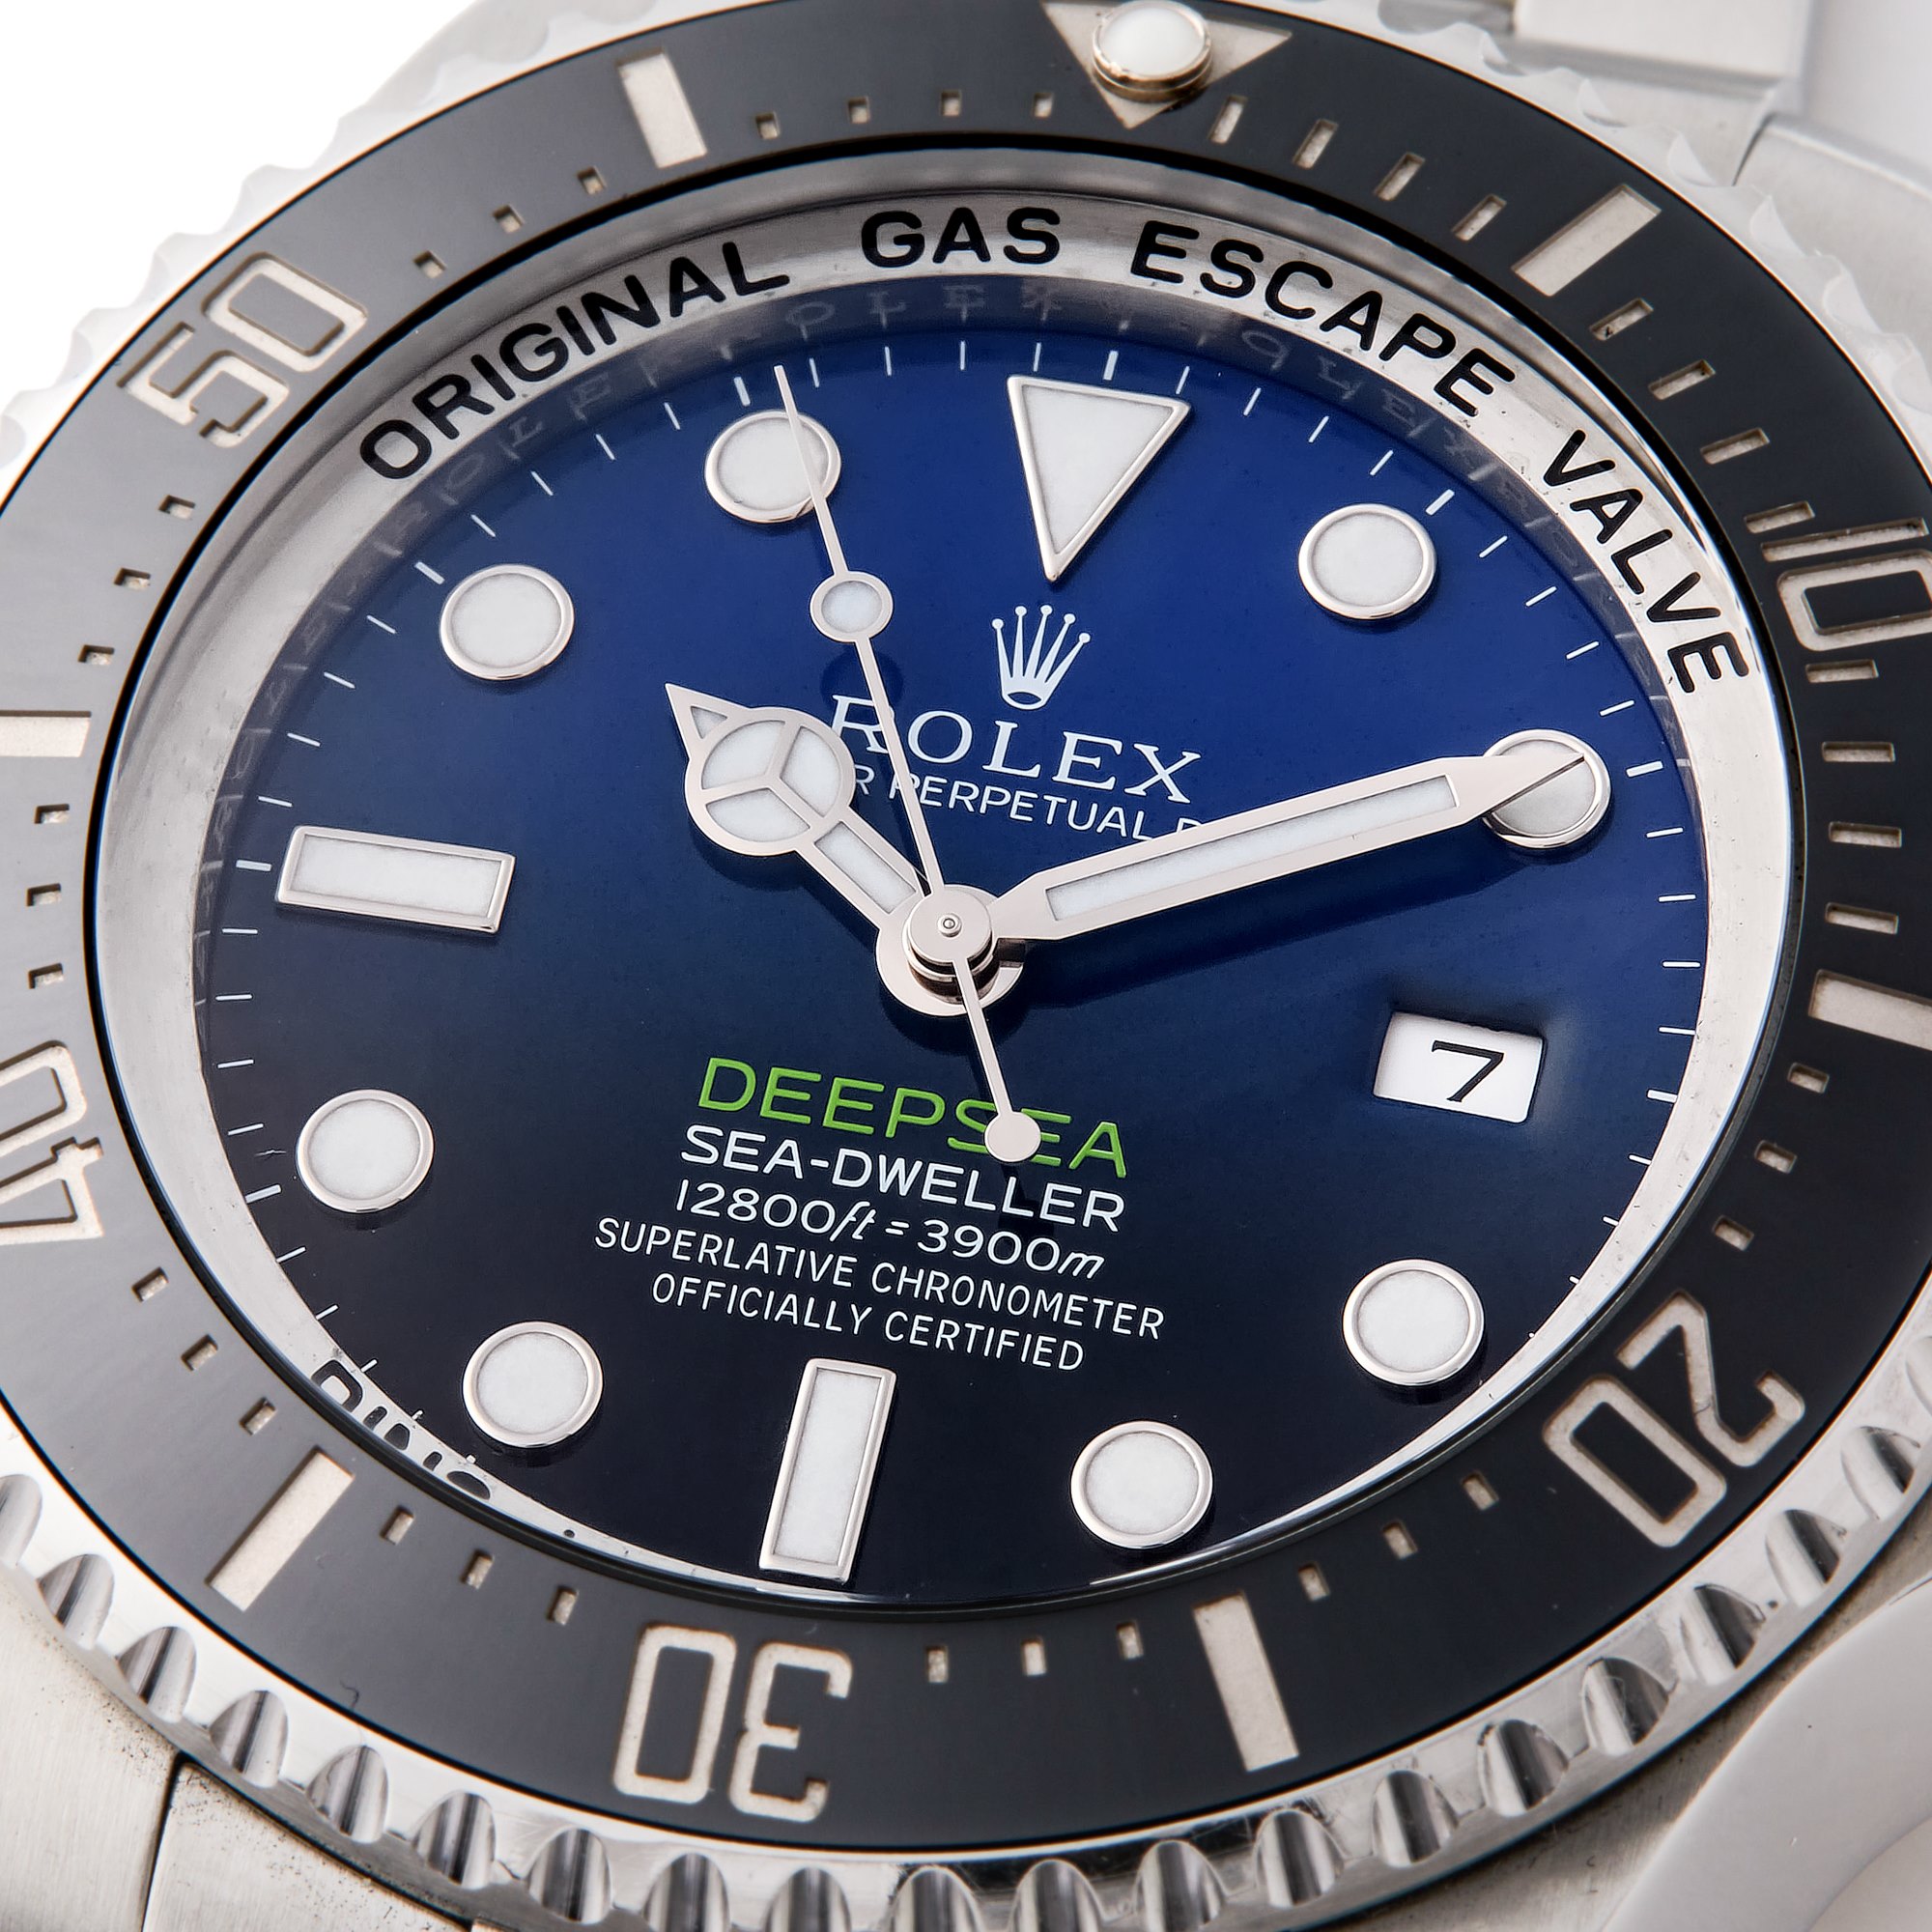 Rolex Sea-Dweller Deepsea Stainless Steel 116660